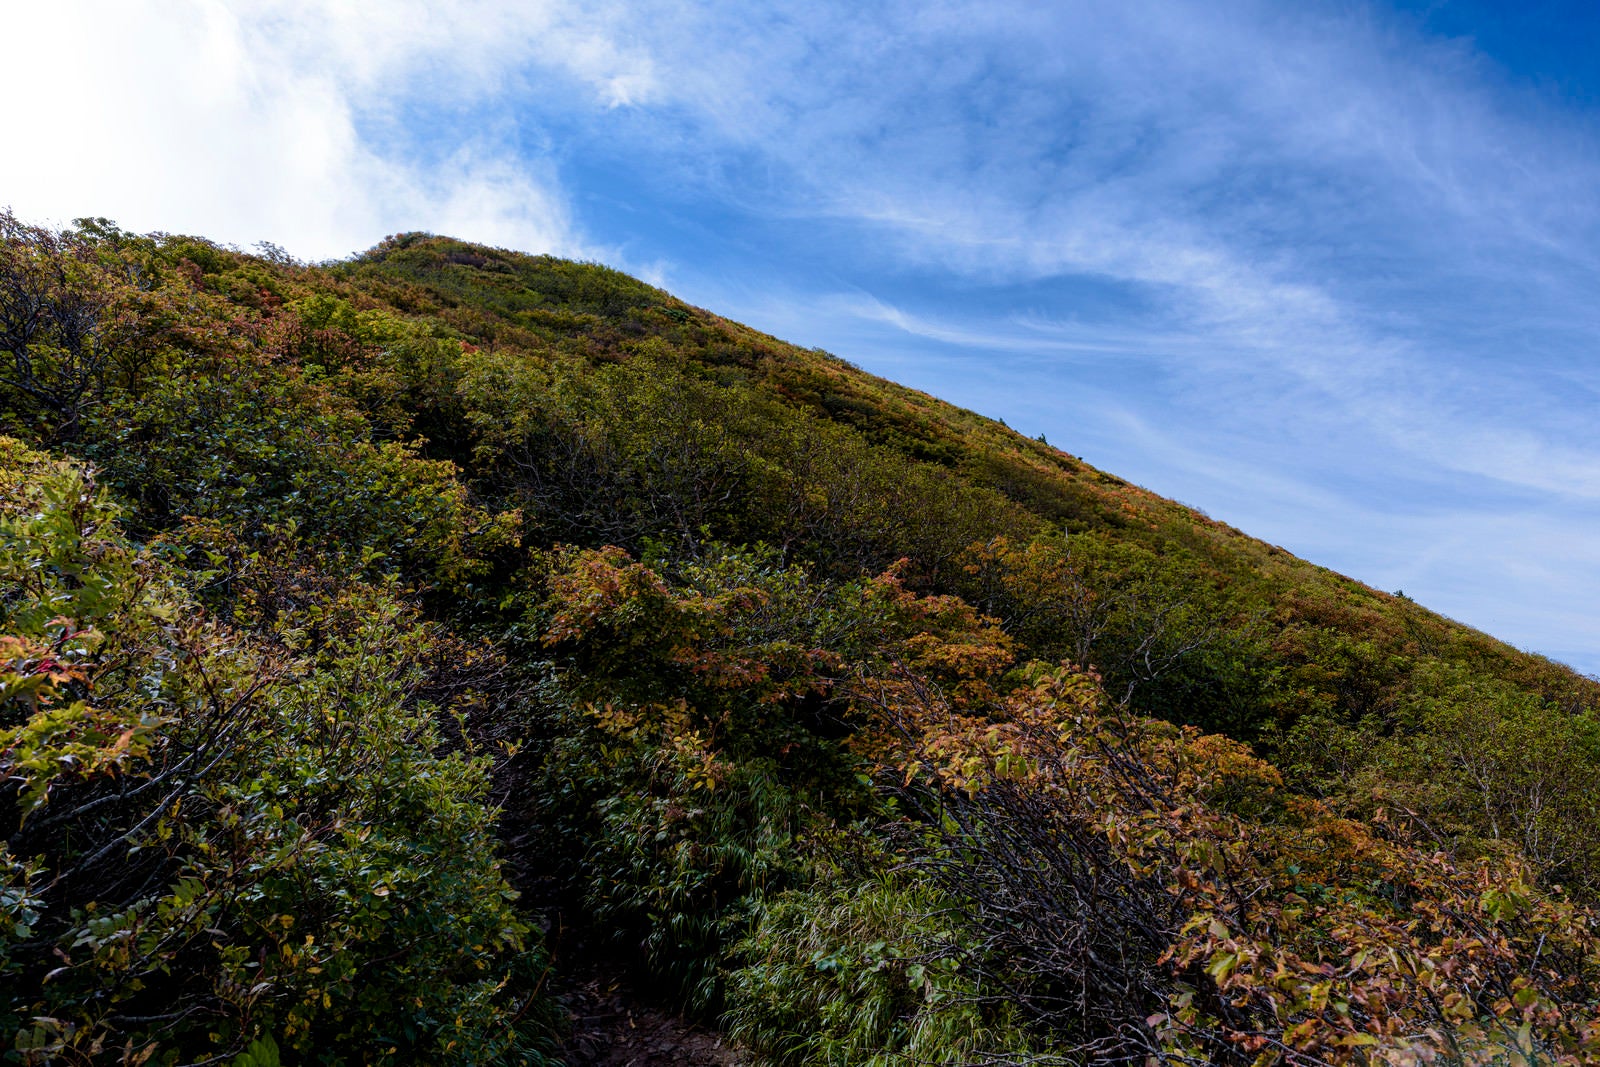 「紅葉した木々に覆われた磐梯山の山頂方面」の写真